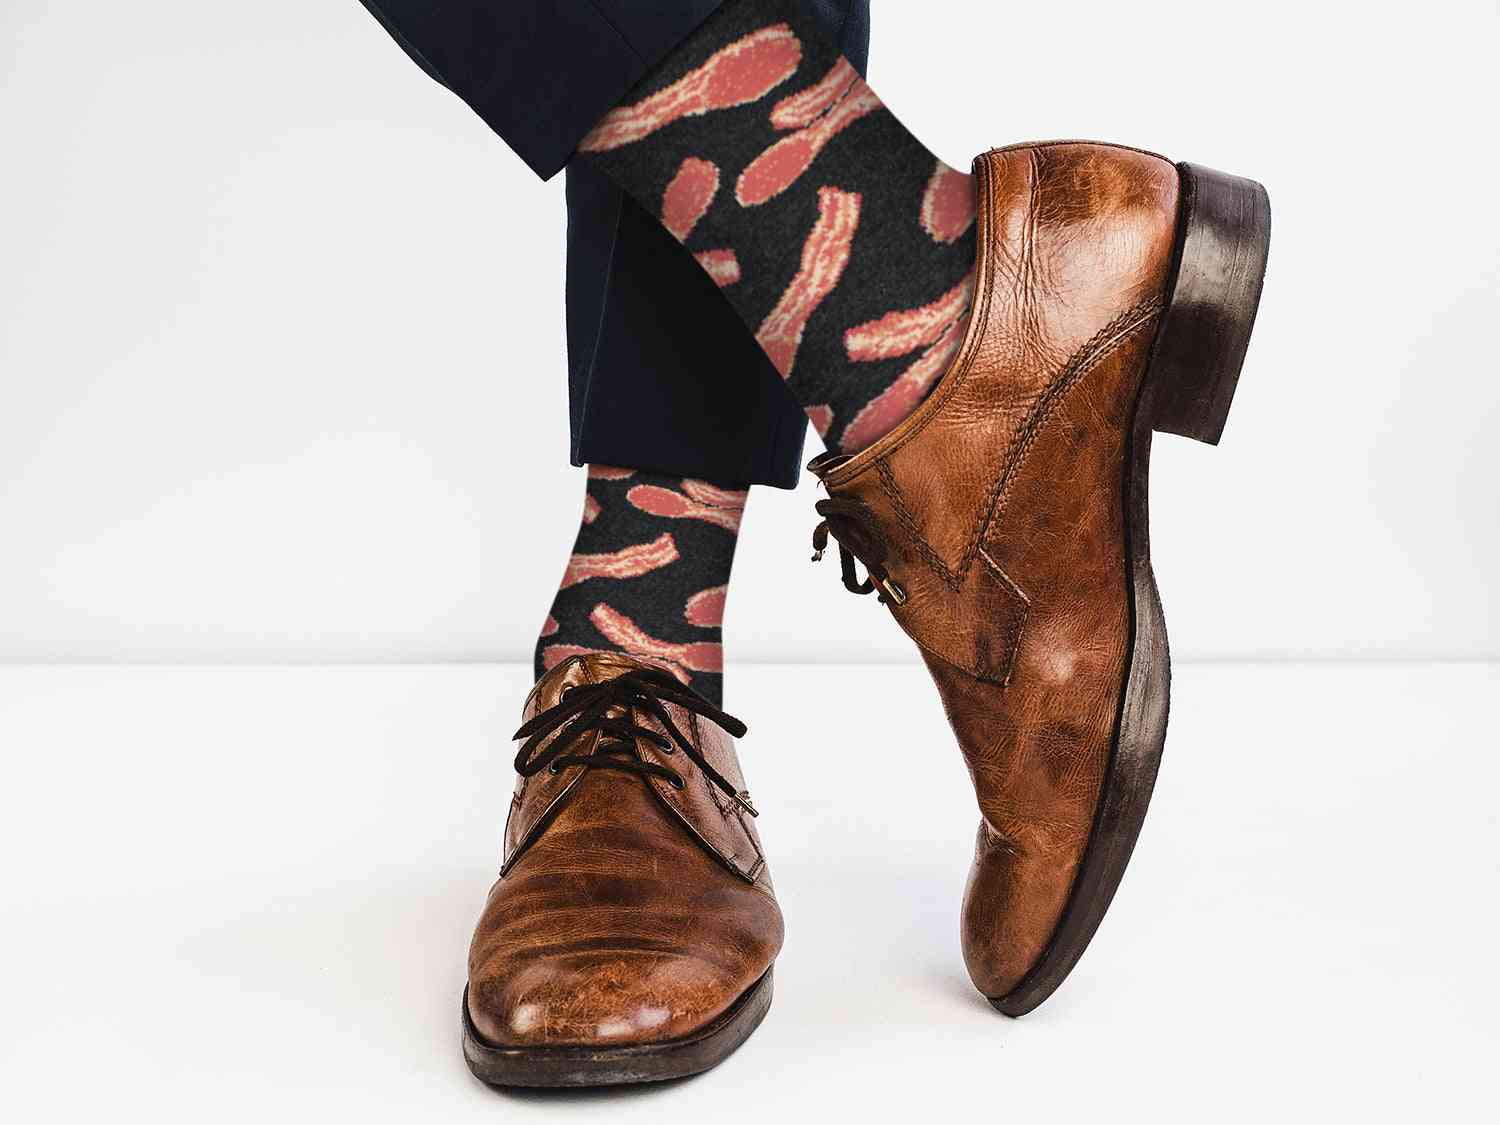 Hyggelige designer trending bacon sokker